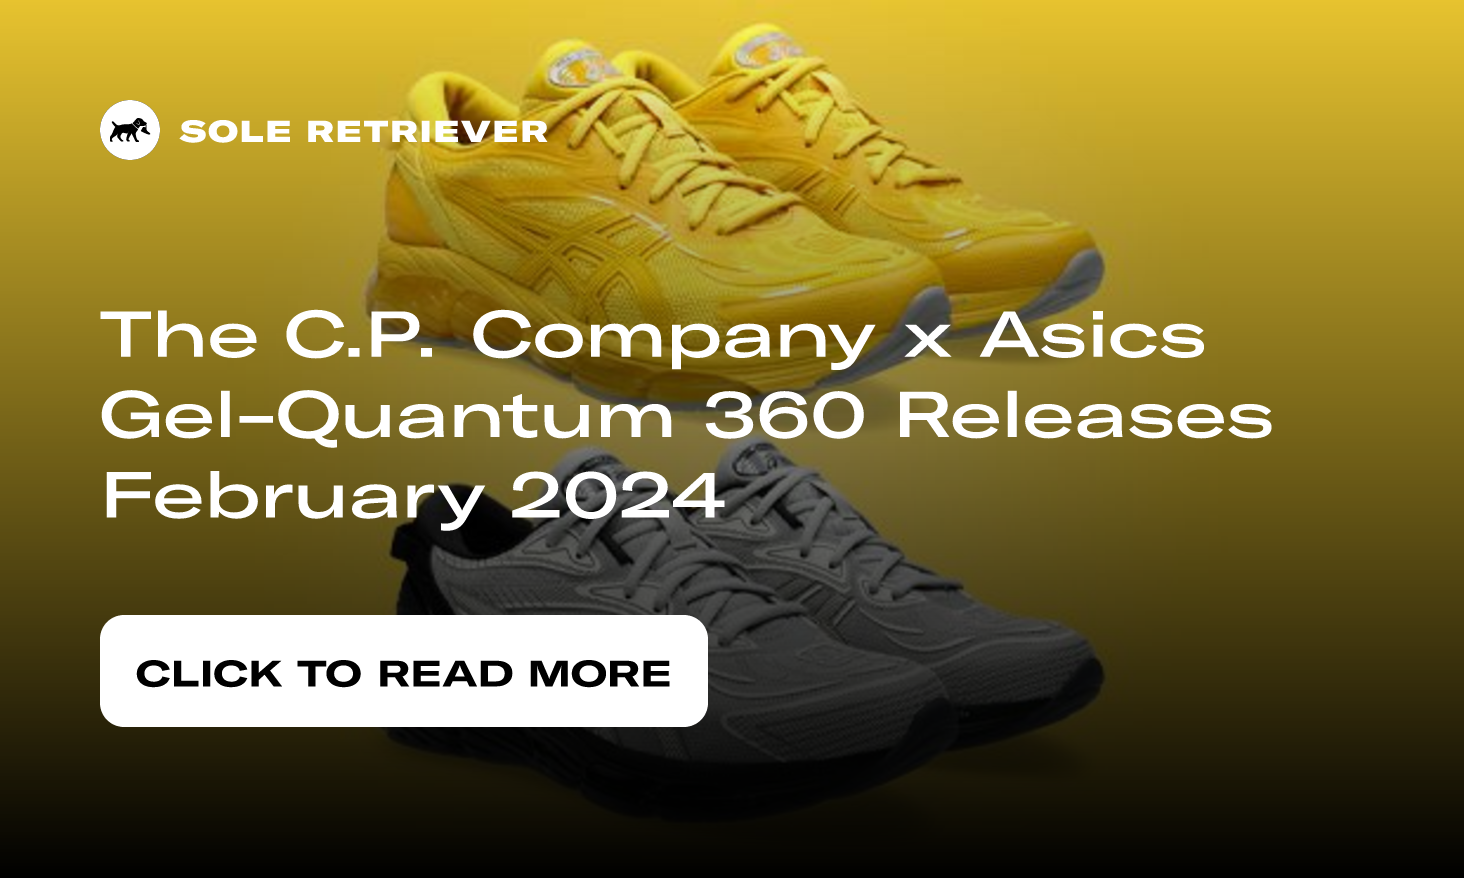 The C.P. Company x Asics Gel-Quantum 360 Releases February 2024